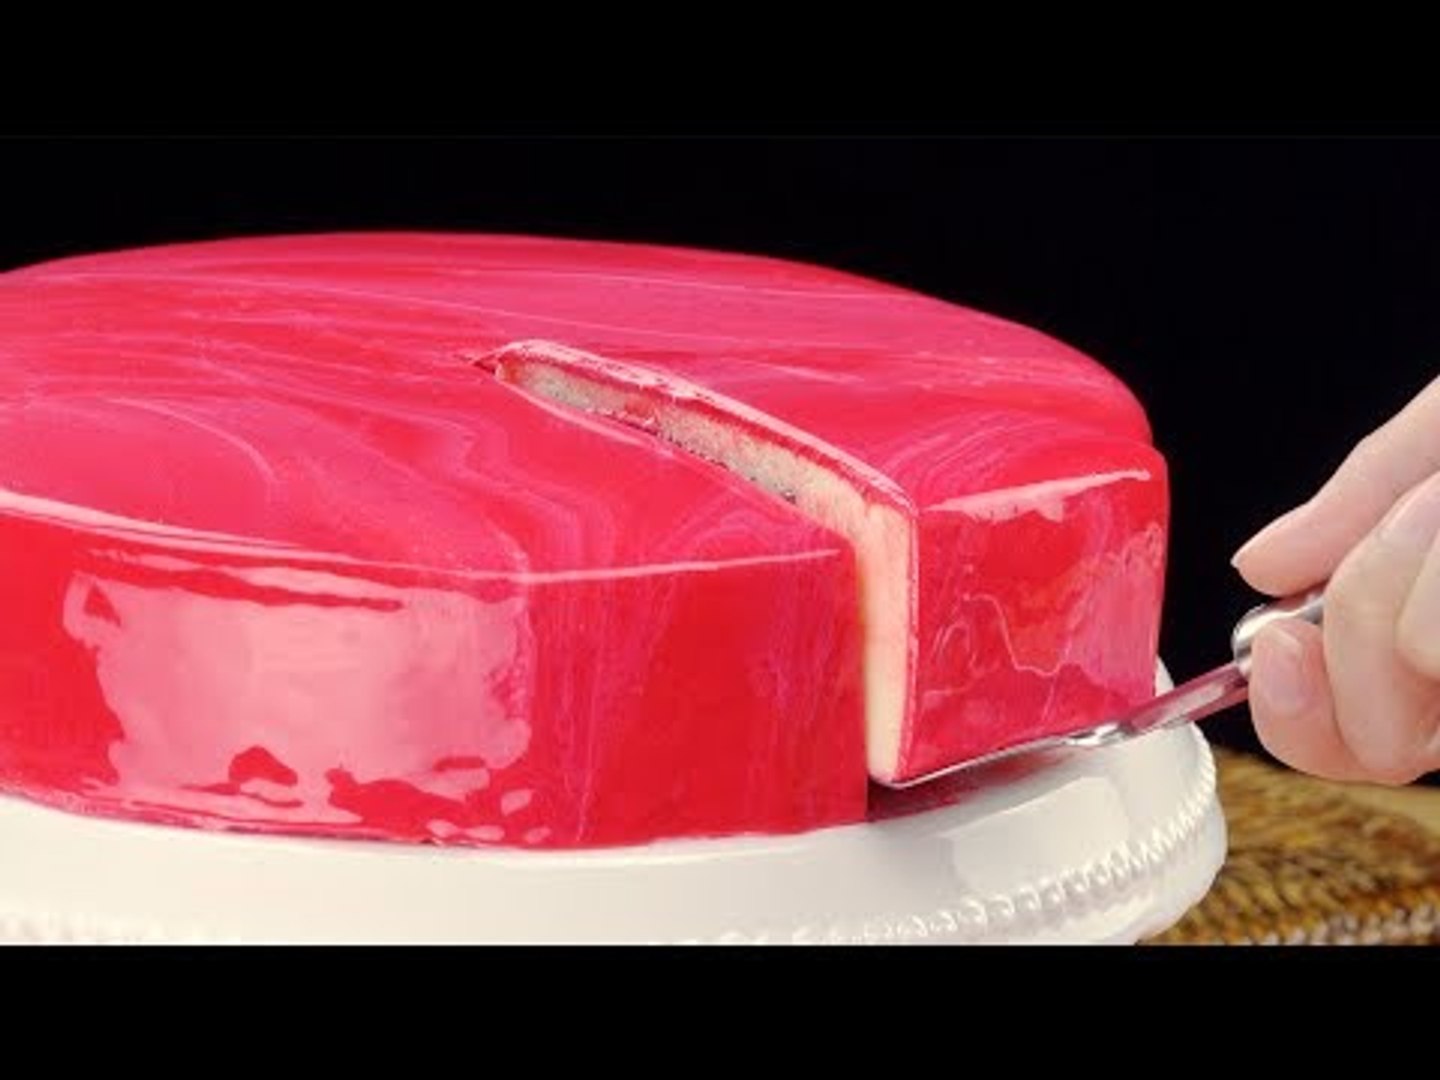 Gâteau miroir : une pâtisserie au glaçage brillant. - Vidéo Dailymotion